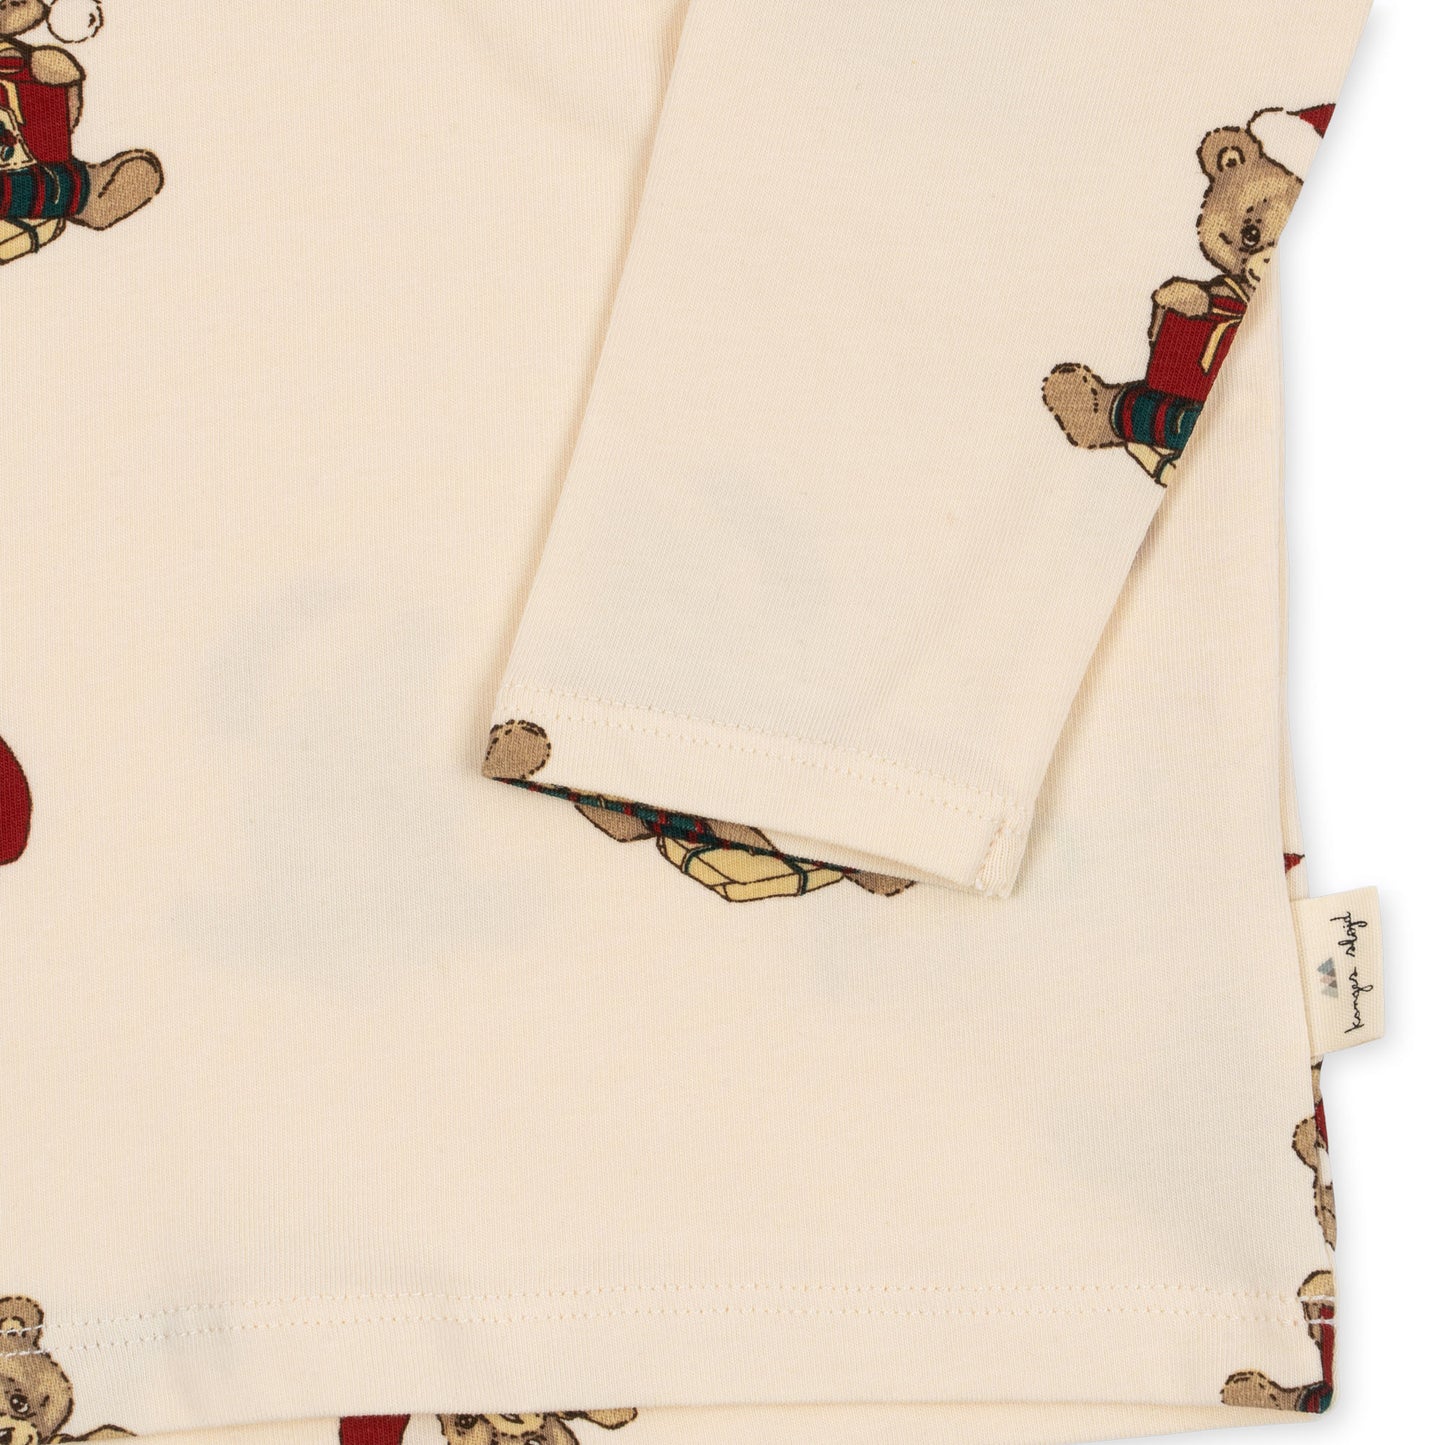 Christmas Organic Cotton Pajama Sets Teddy